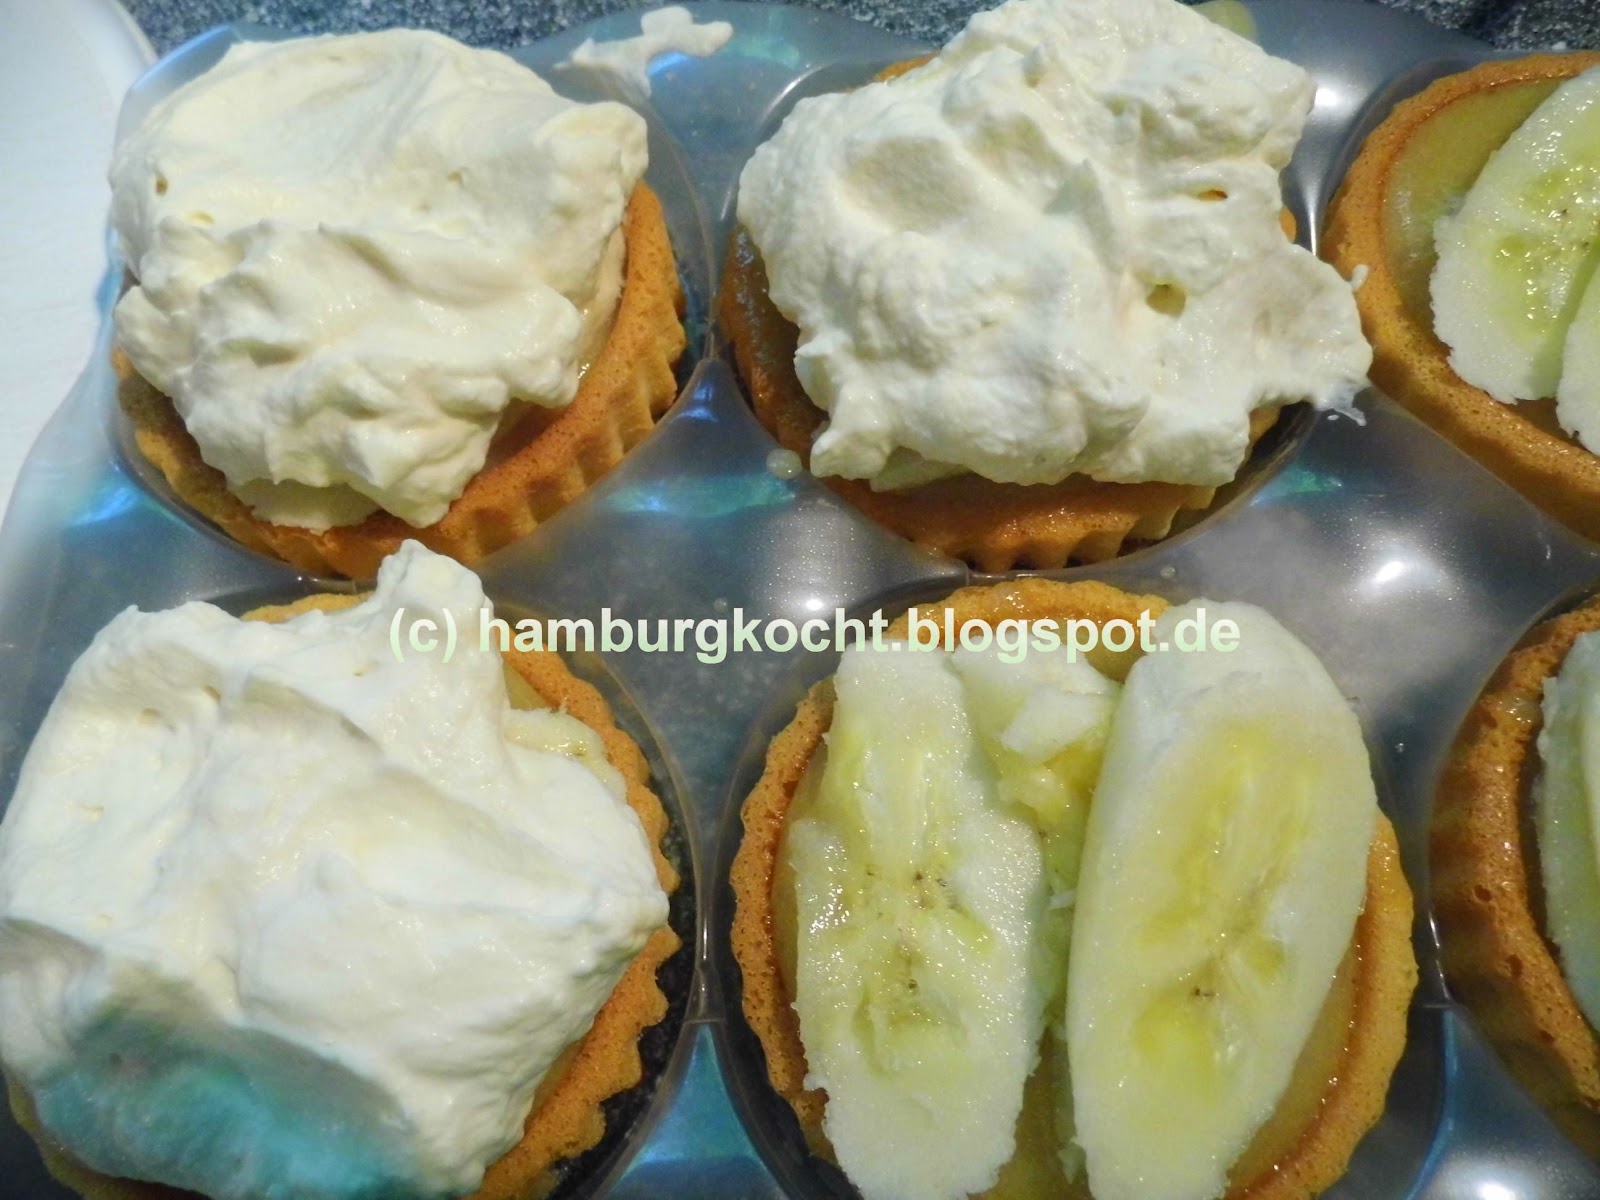 Hamburg kocht!: Schnelle Bananen-Toffee-Törtchen nach Jamie Oliver